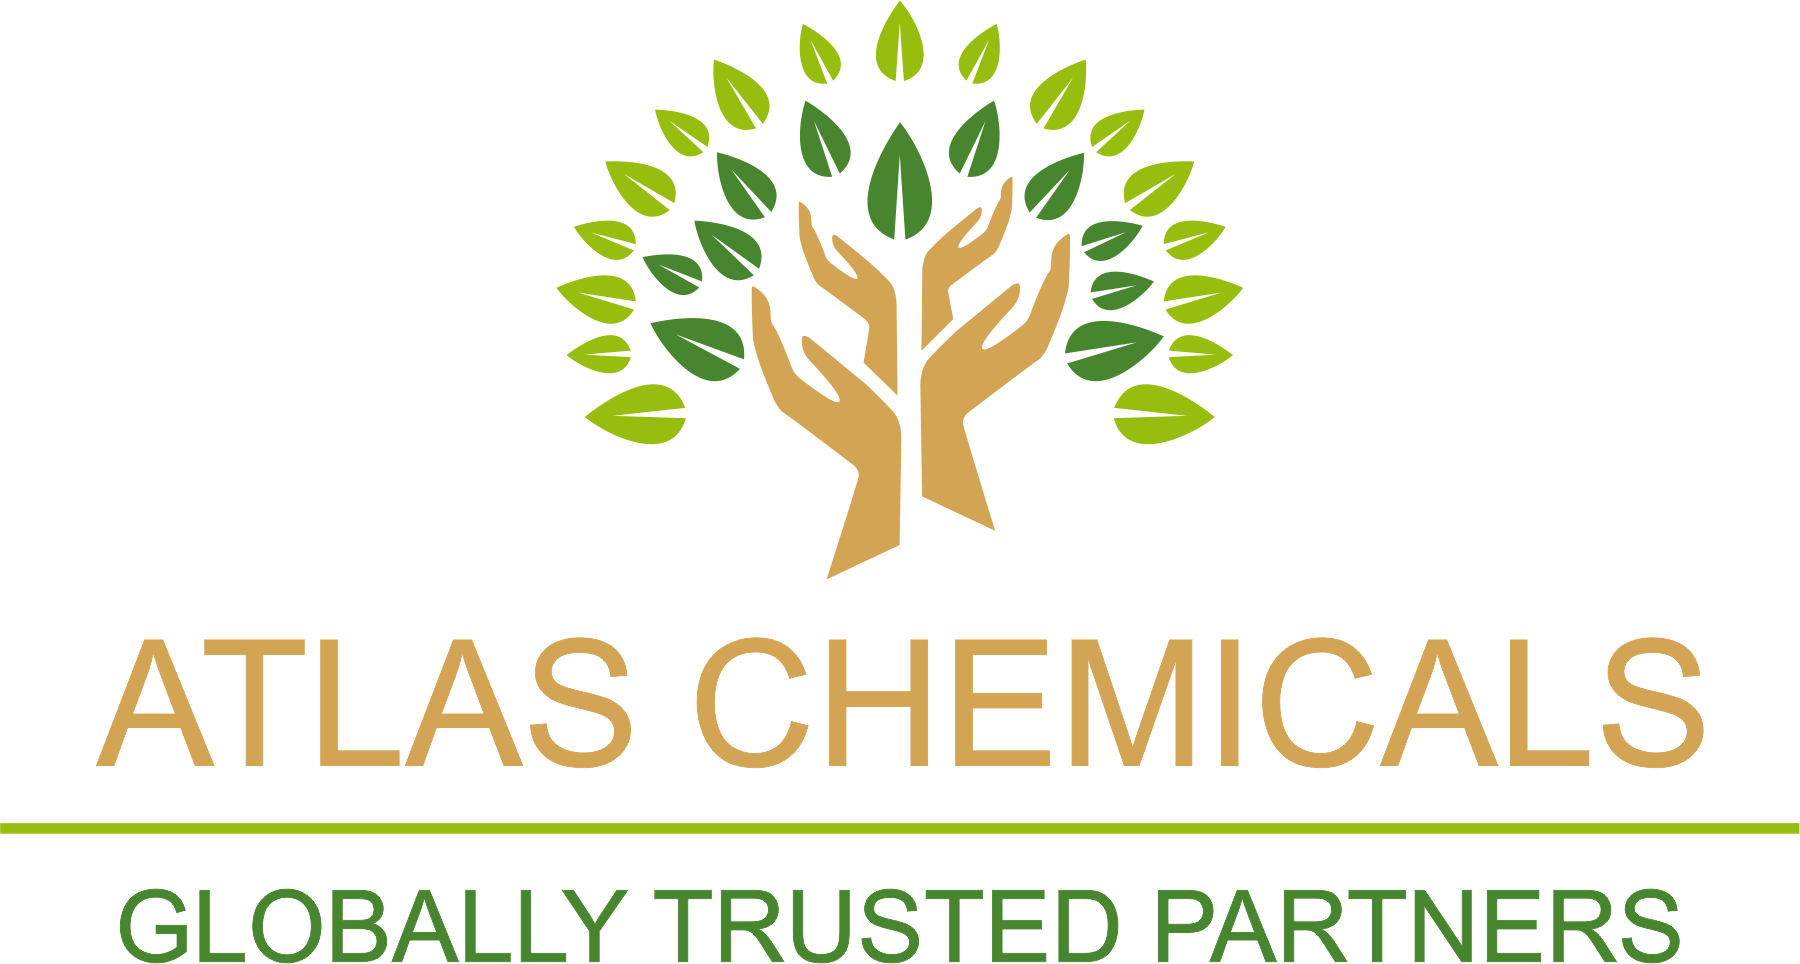 Atlas Chemicals